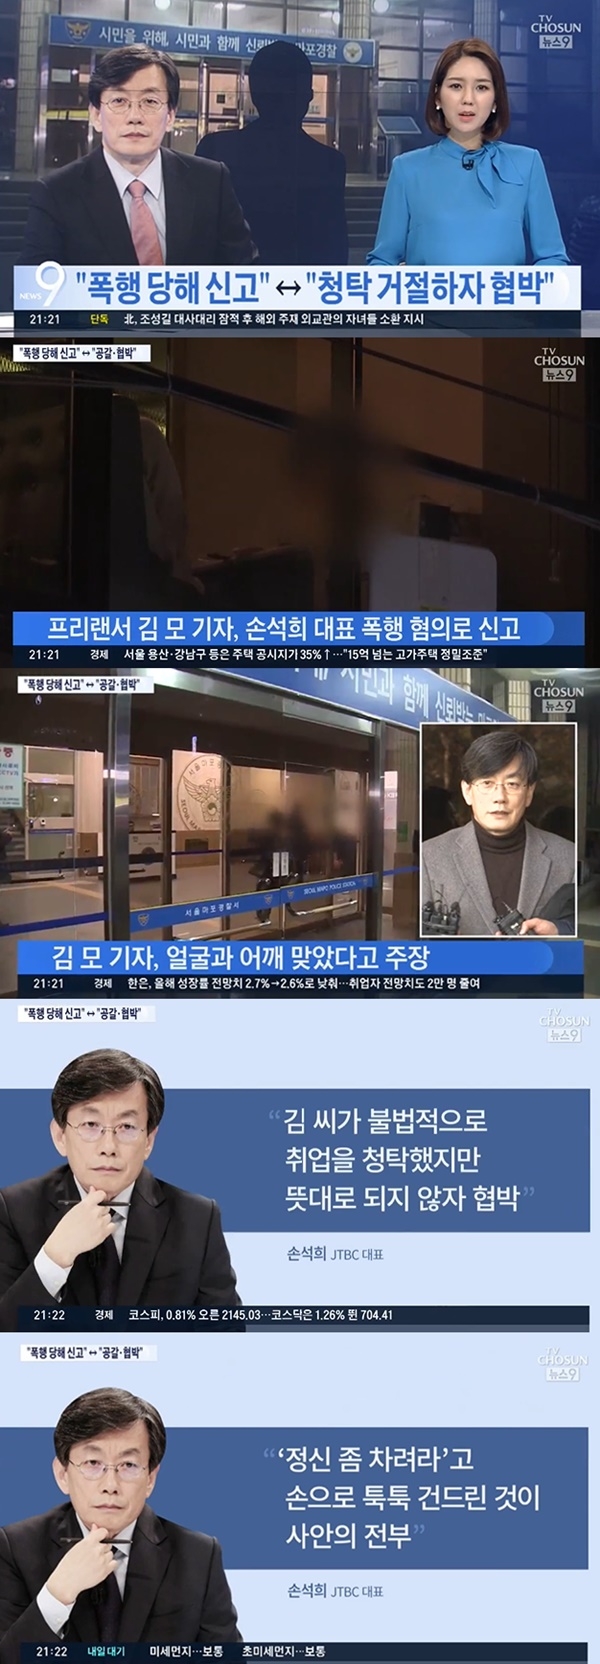 손석희 JTBC 대표이사 폭력 의혹 나와 (사진: TV조선 뉴스)